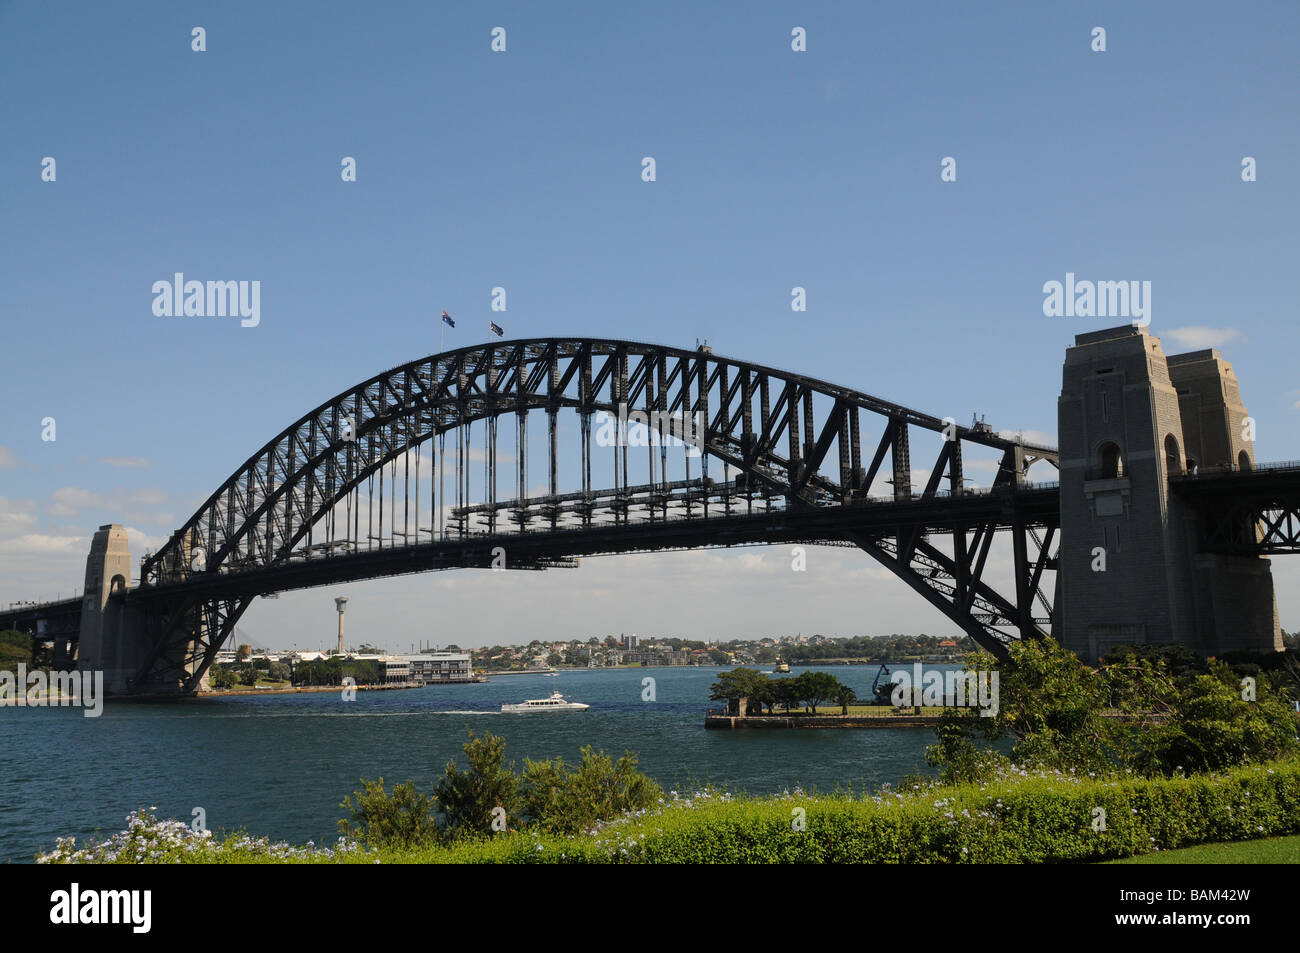 Sydney, Australia View of Sydney Harbour Bridge. Icons of Australia, the bridge opened in 1932, The Opera House in 2003. Stock Photo